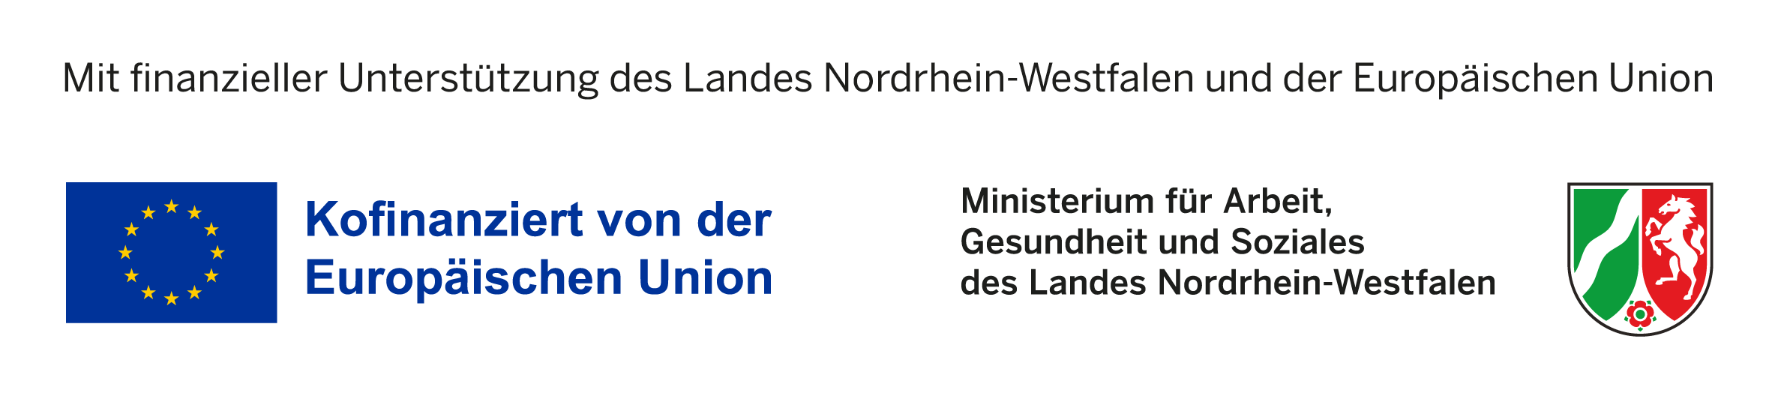 Mit finanzieller Unterstützung des Landes Nordrhein-Westfalen und der Europäischen Union (c) MAGS NRW